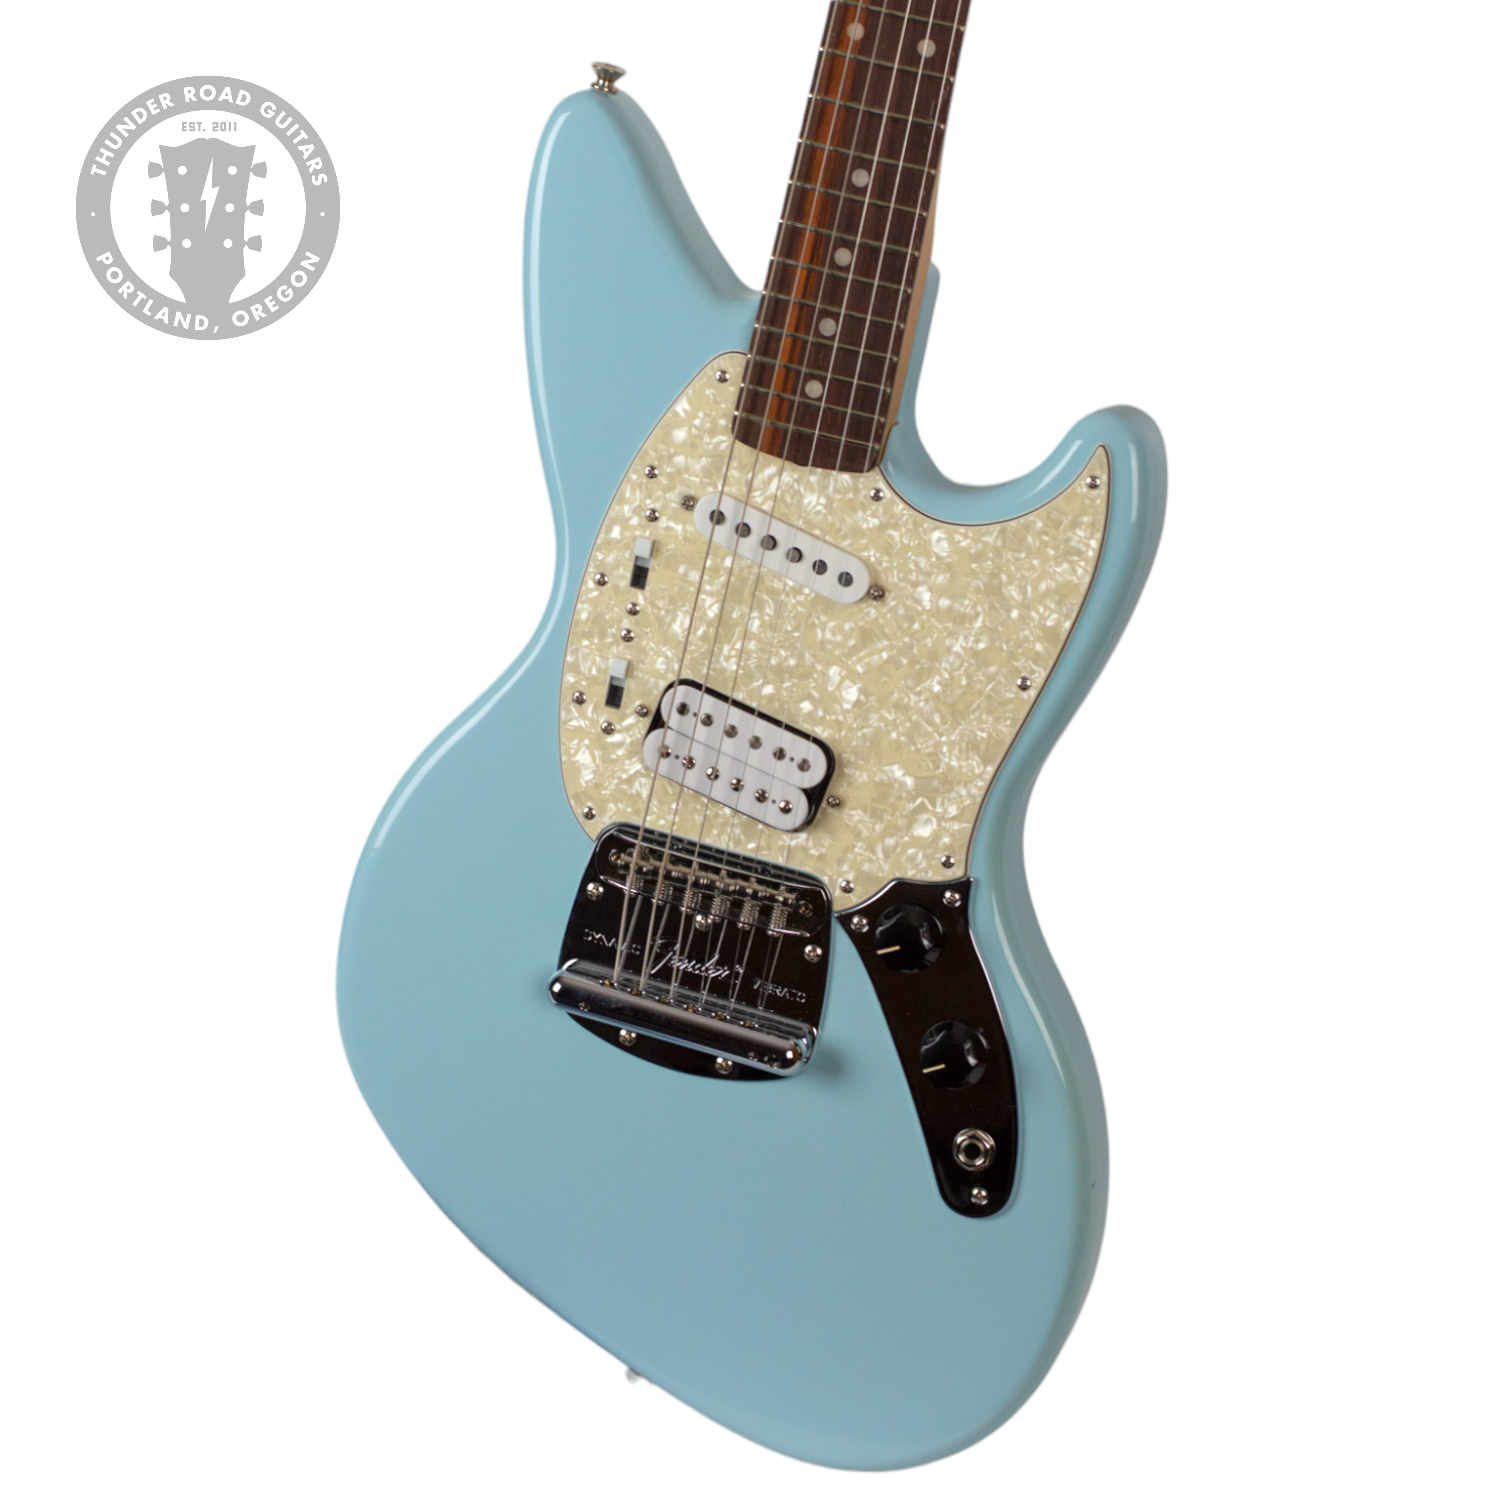 Thunder Road Guitars - New-Old-Stock Demo Model Fender Kurt Cobain 